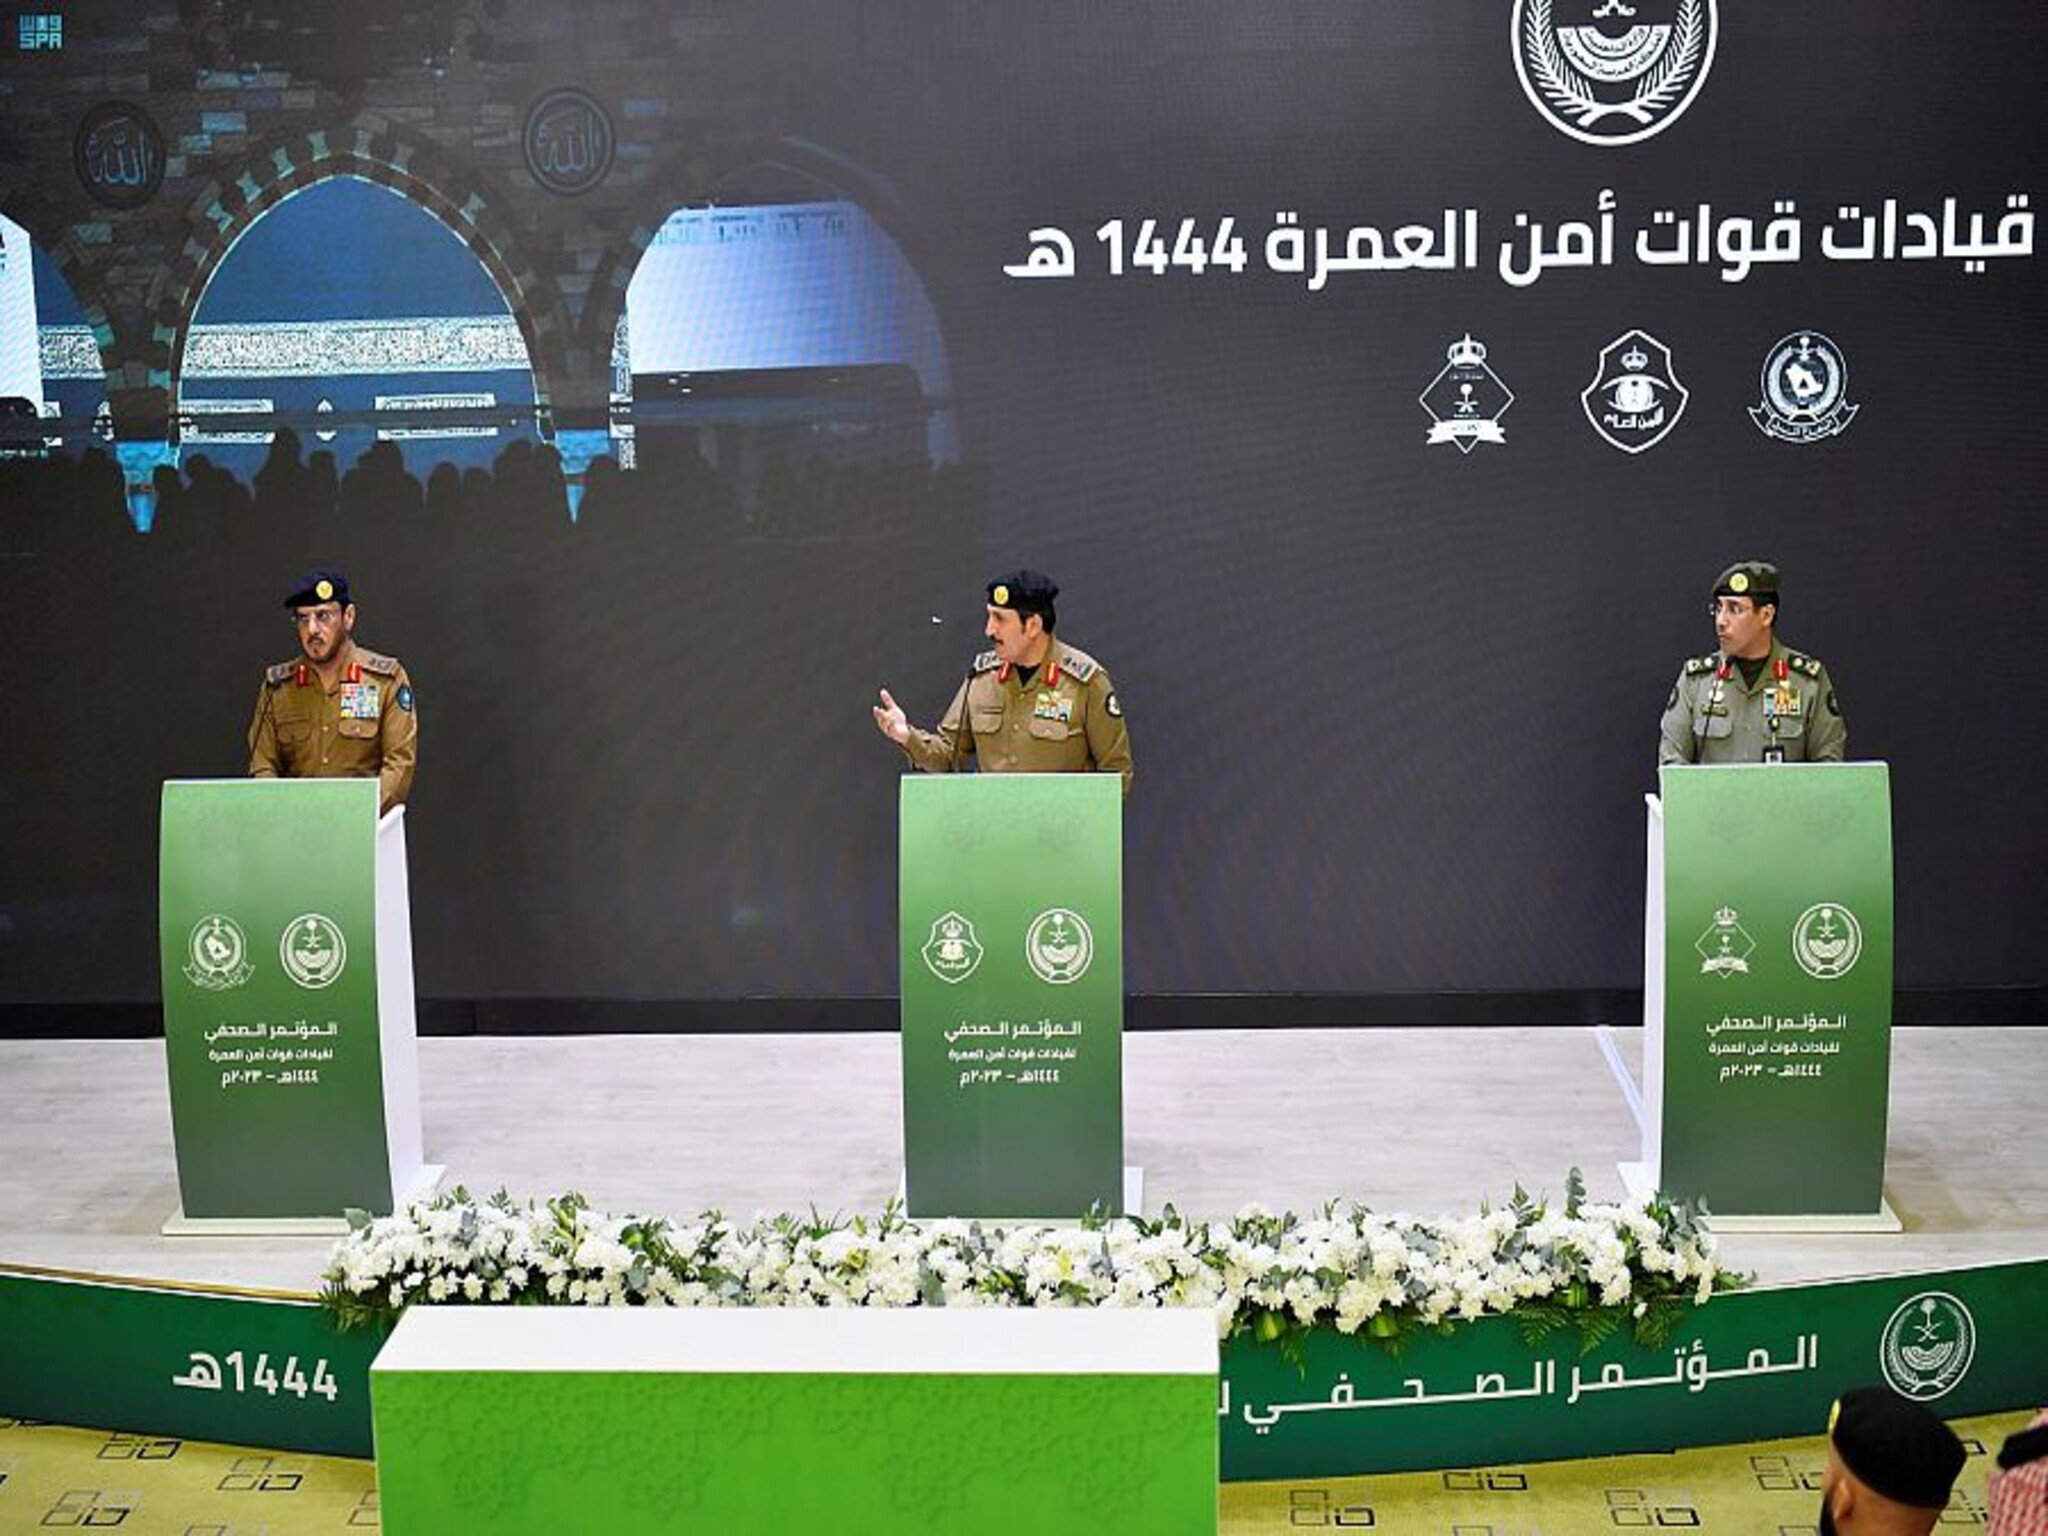 الداخلية السعودية تعقد مؤتمر صحفي لقيادات قوات أمن الحج 1444 